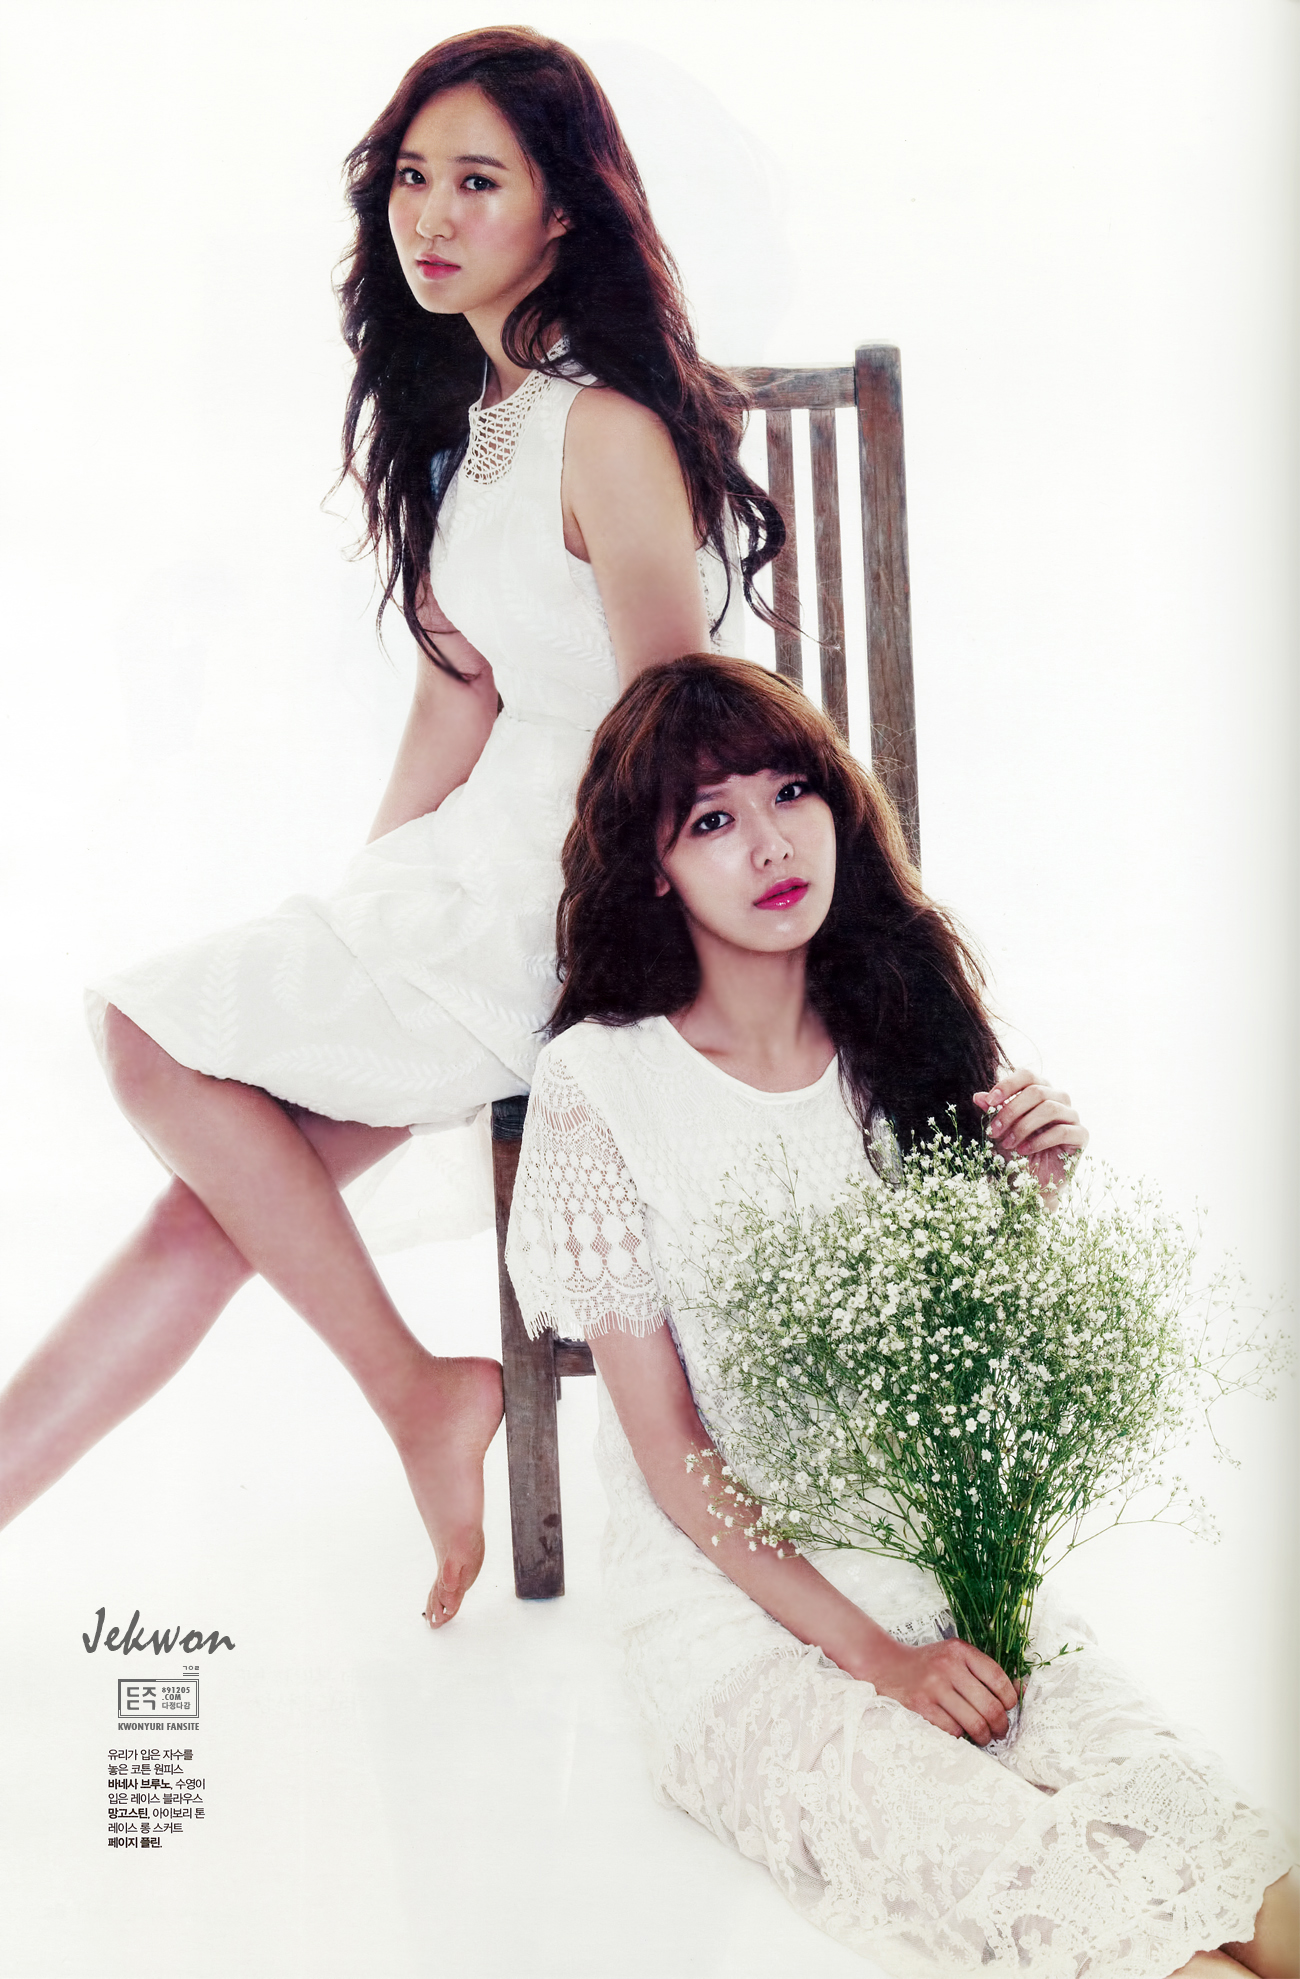 [PIC][01-04-2013]SooYoung và Yuri xuất hiện trên số đầu tiên của tạp chí "THE STAR" 2550A53E515B2AE61F996F